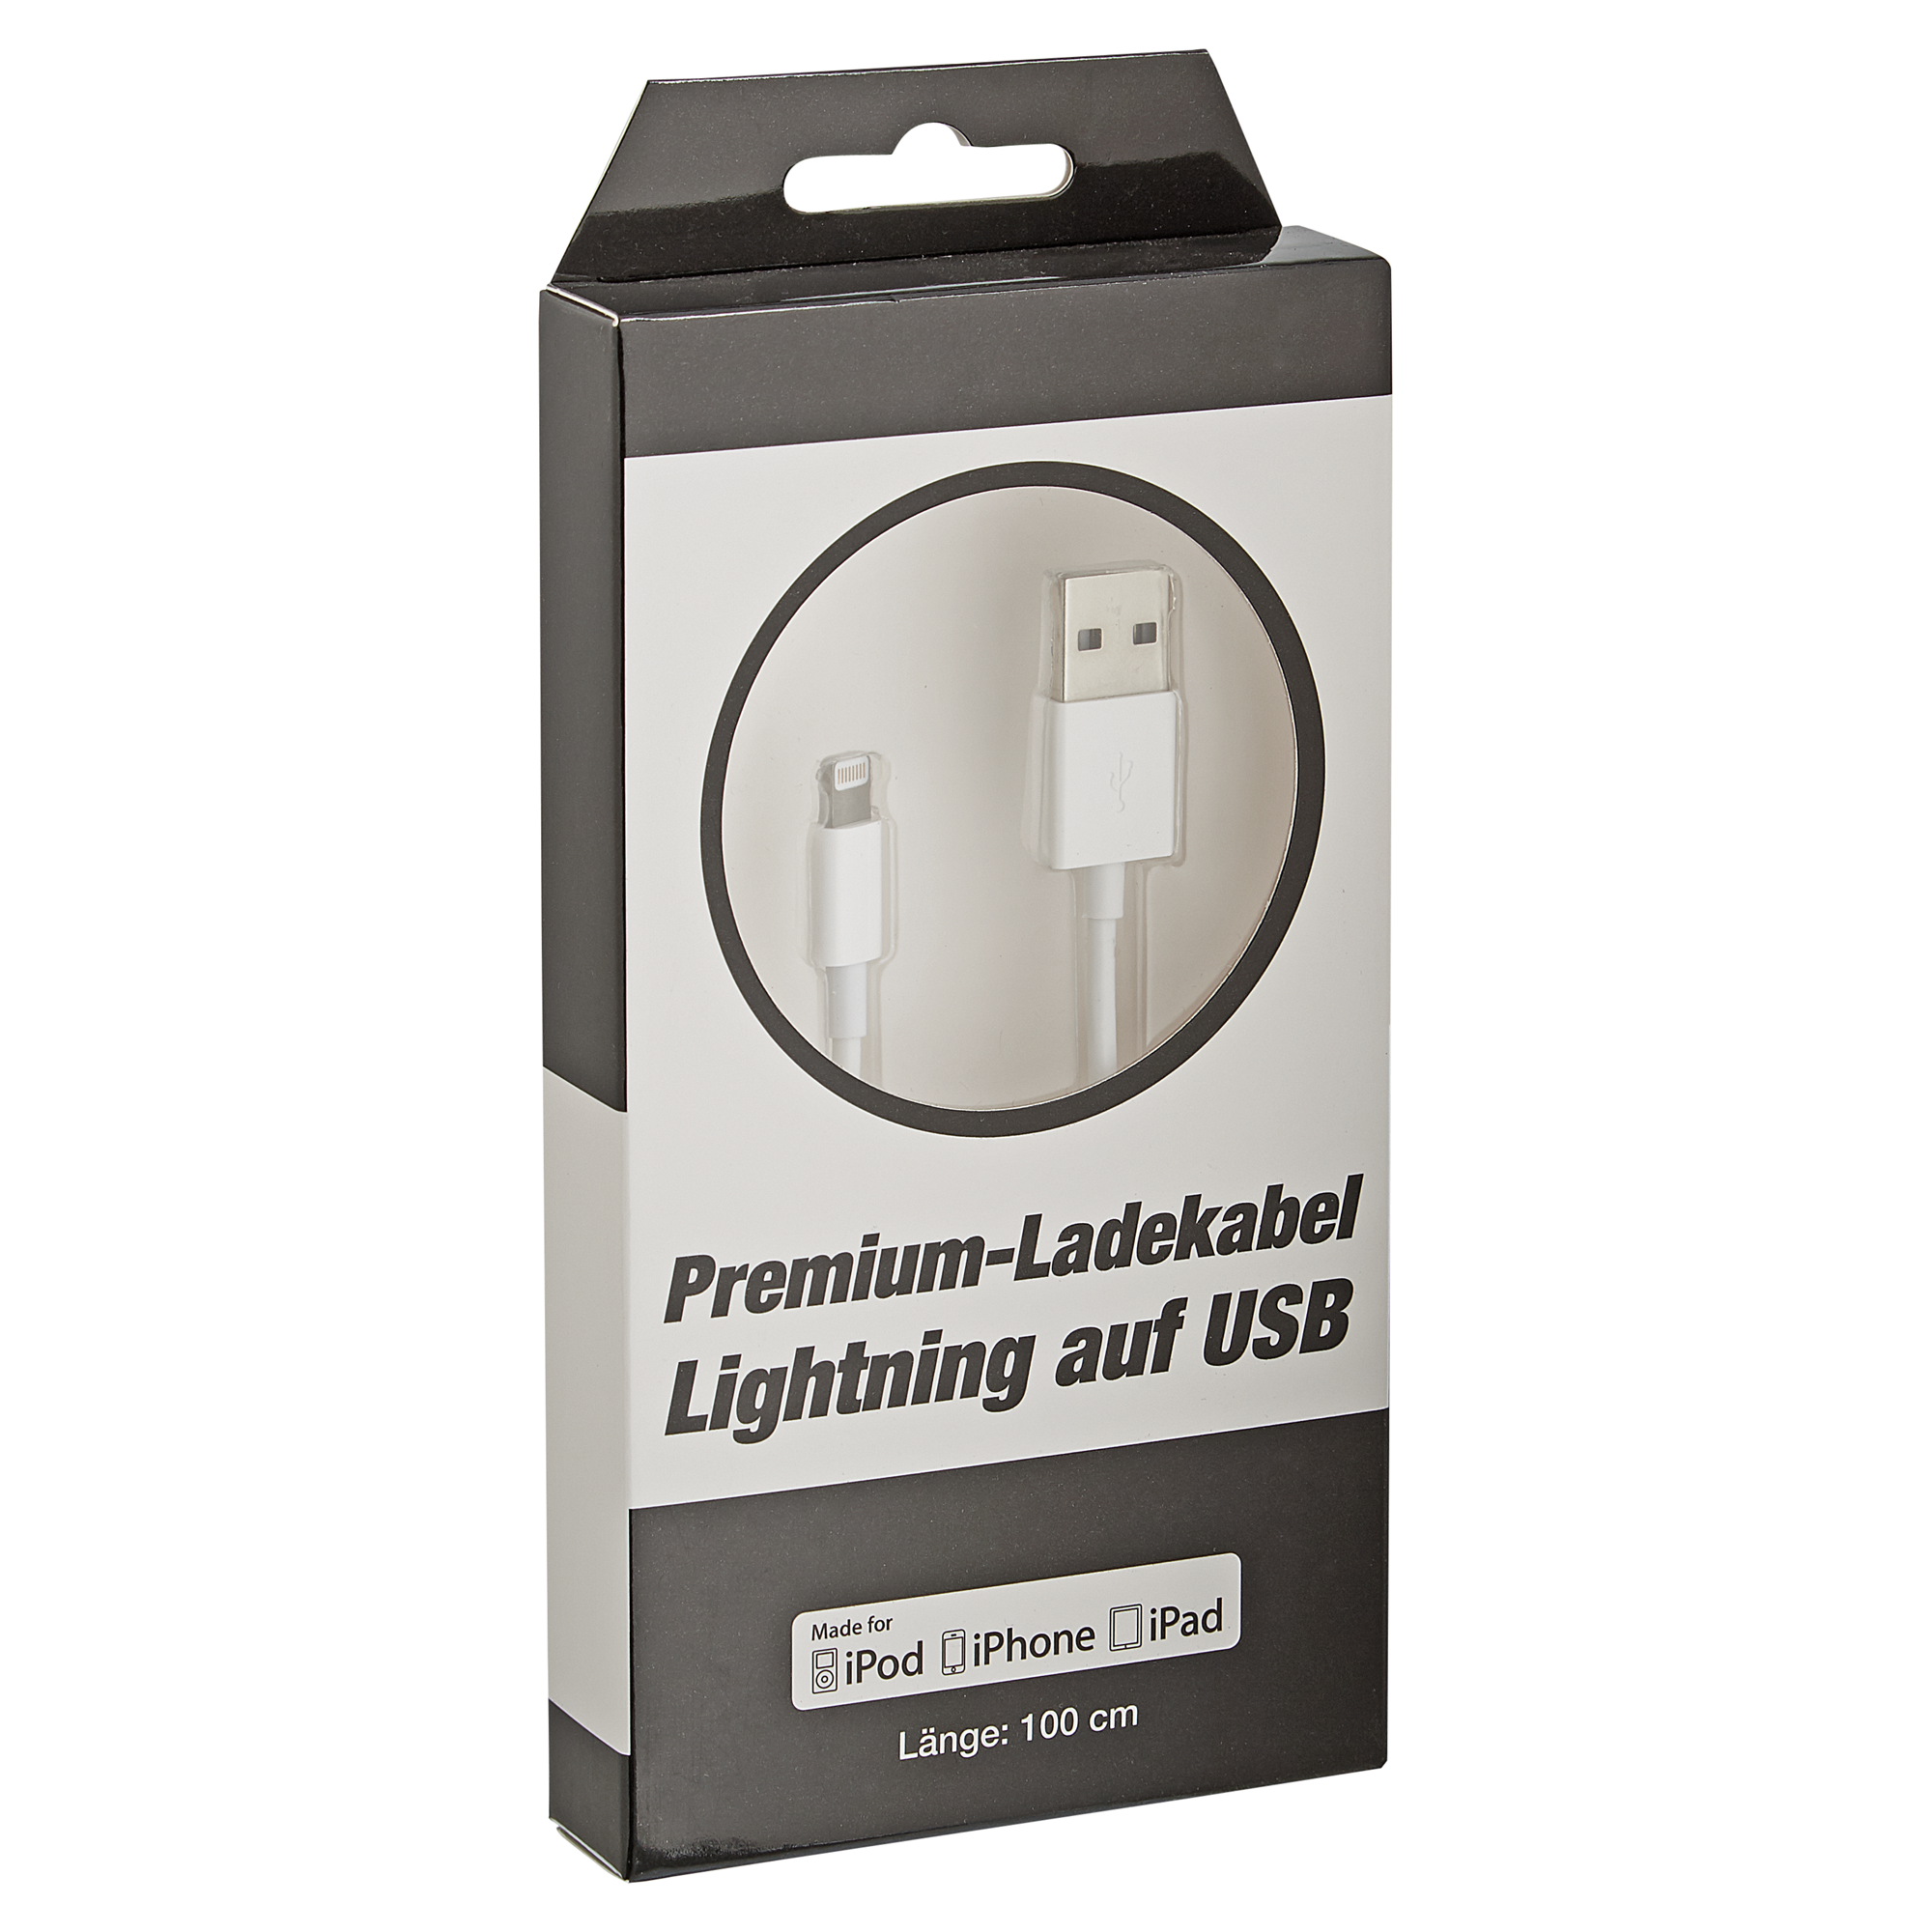 Premium-Ladekabel Lightning auf USB 100 cm + product picture